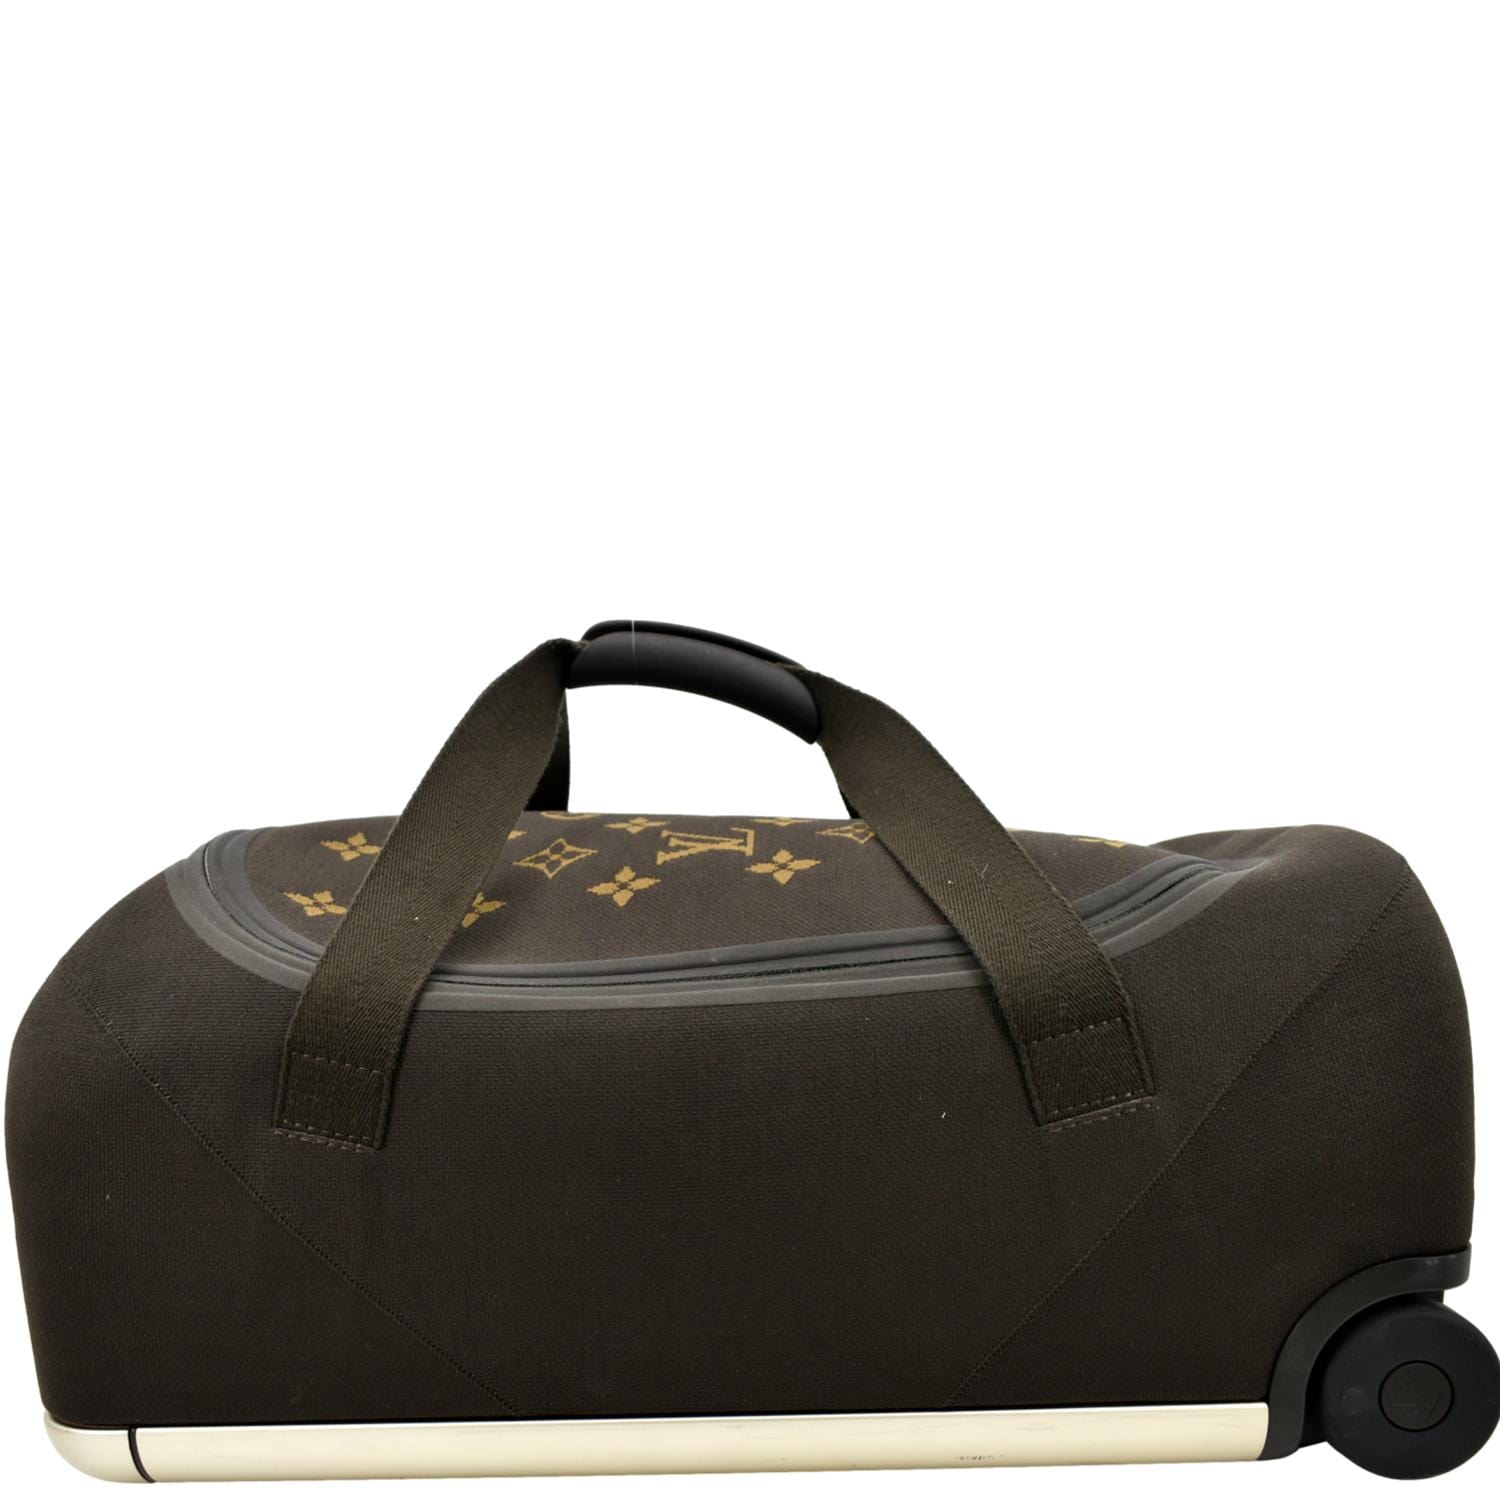 Louis Vuitton Monogram 2 Way Soft Luggage Travel Bag Brown